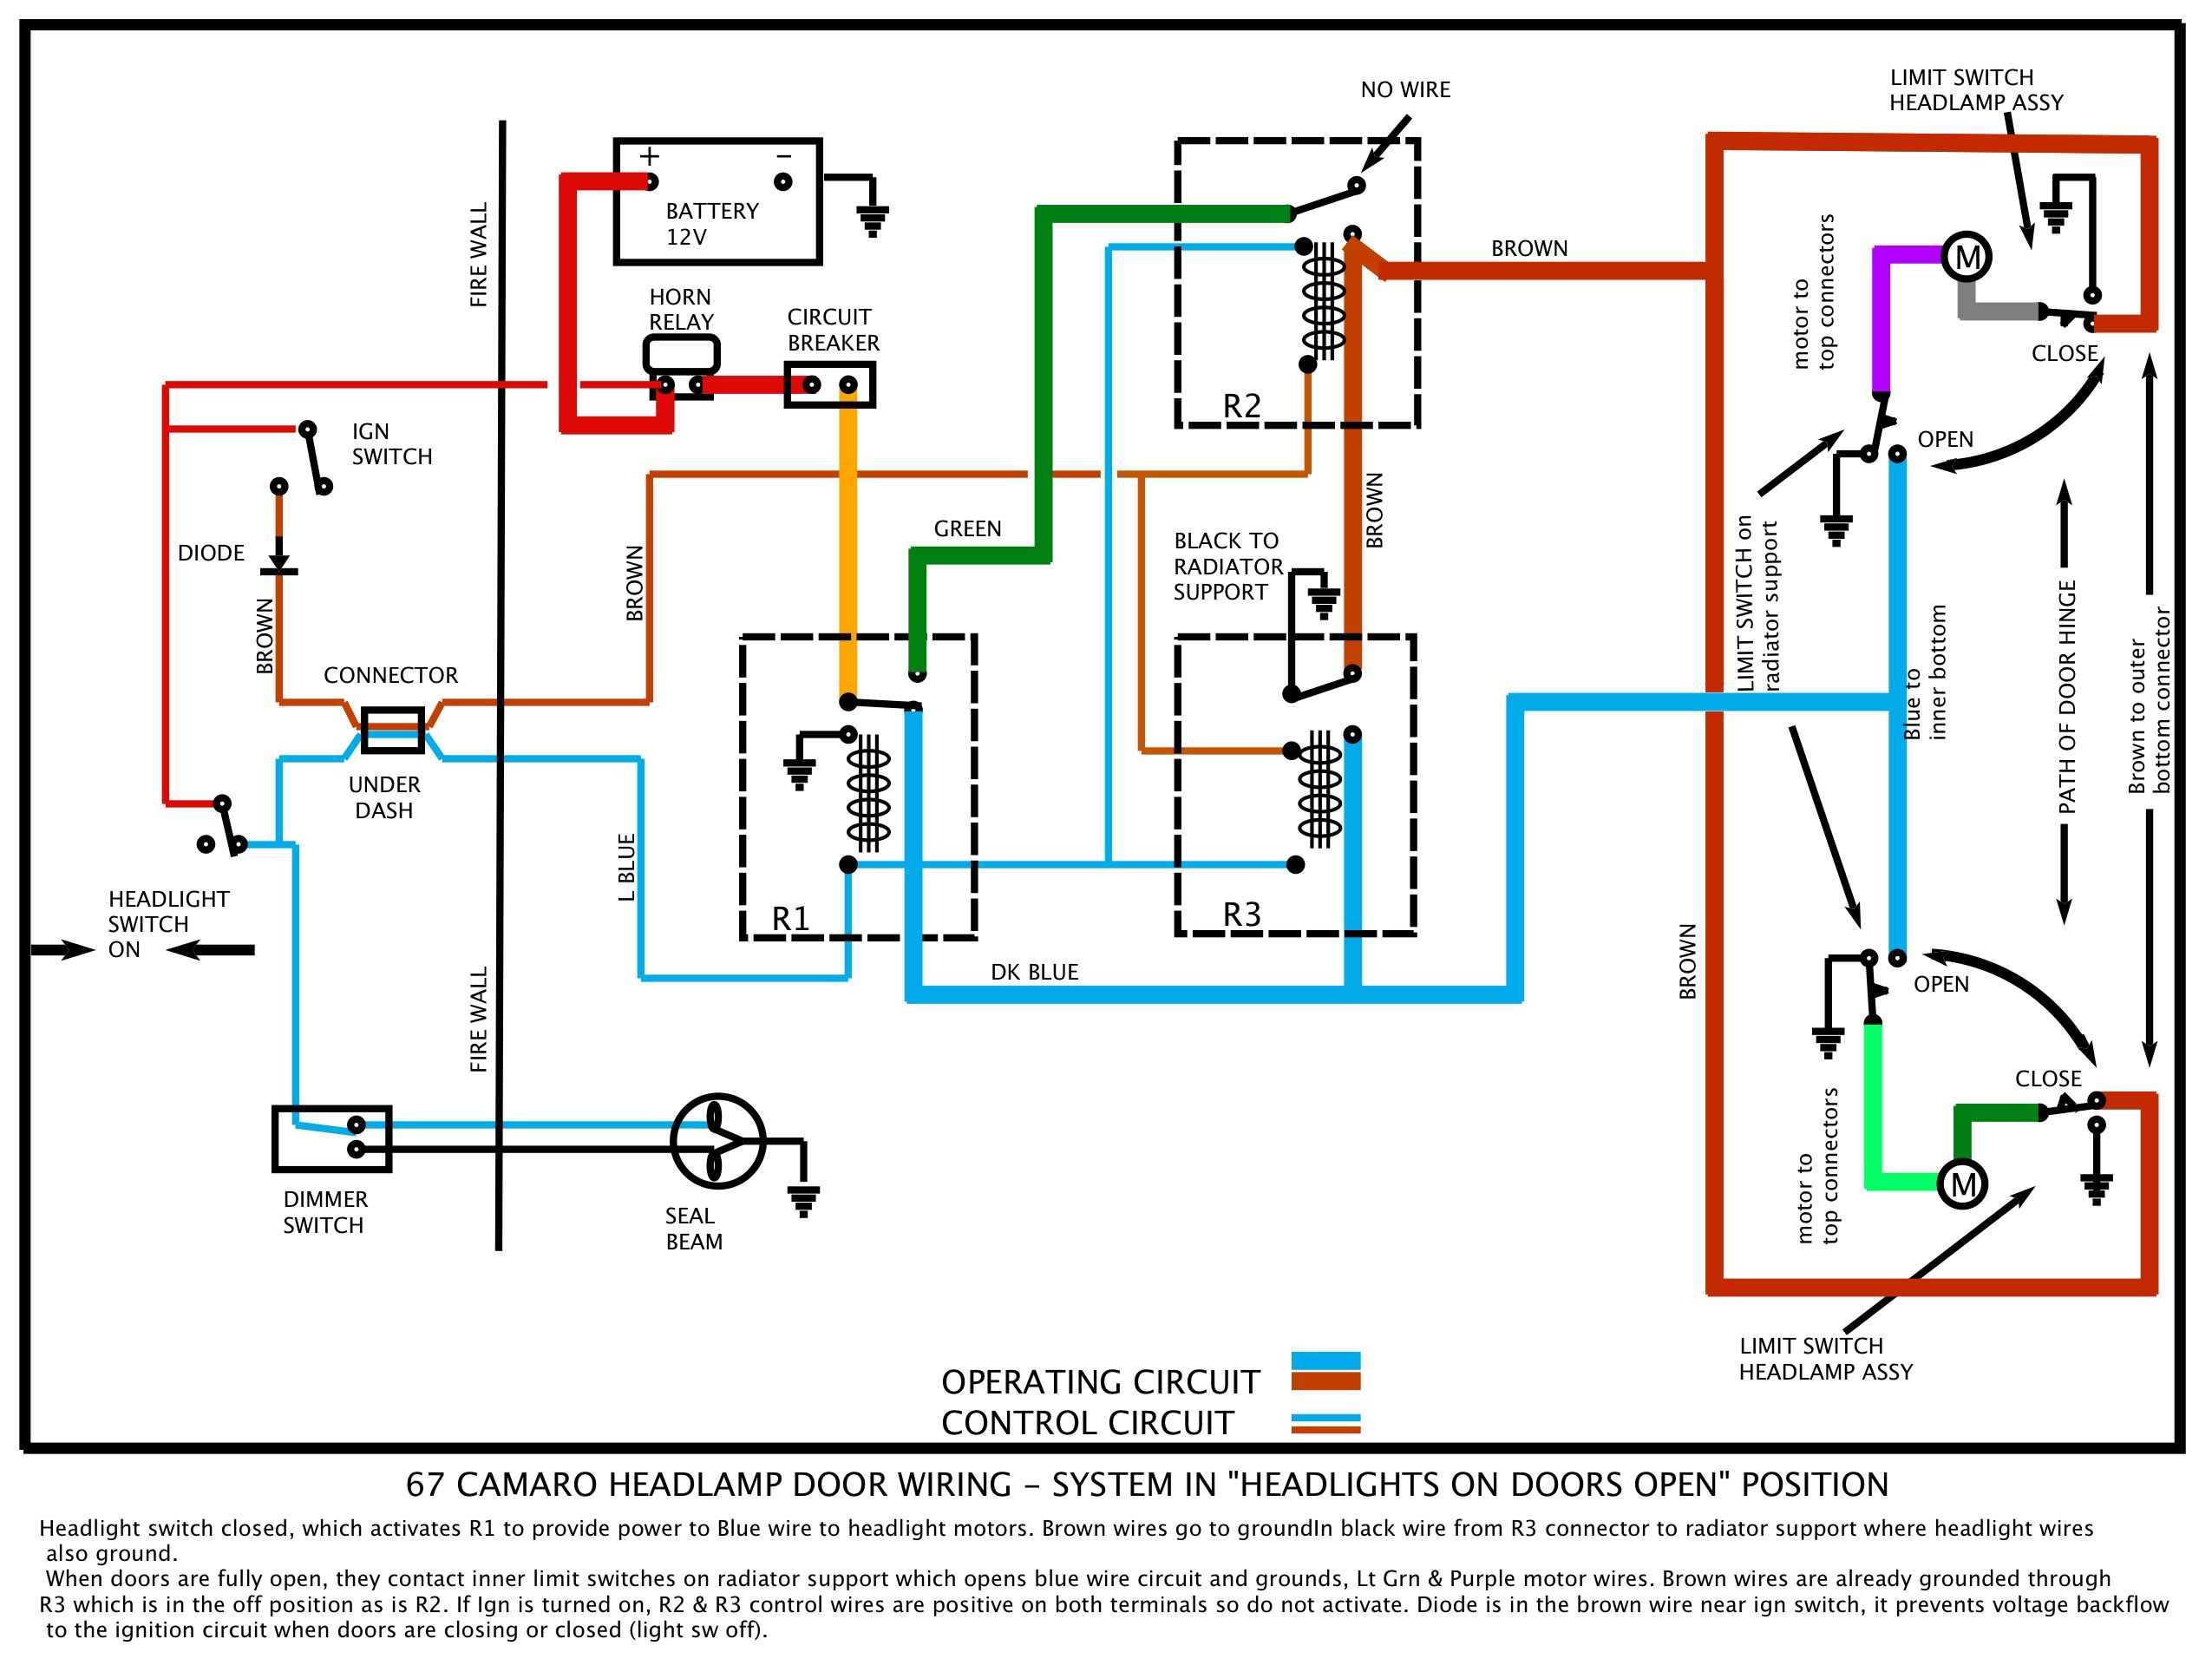 Freightliner Headlight Wiring Diagram | Wiring Diagram - Freightliner Headlight Wiring Diagram